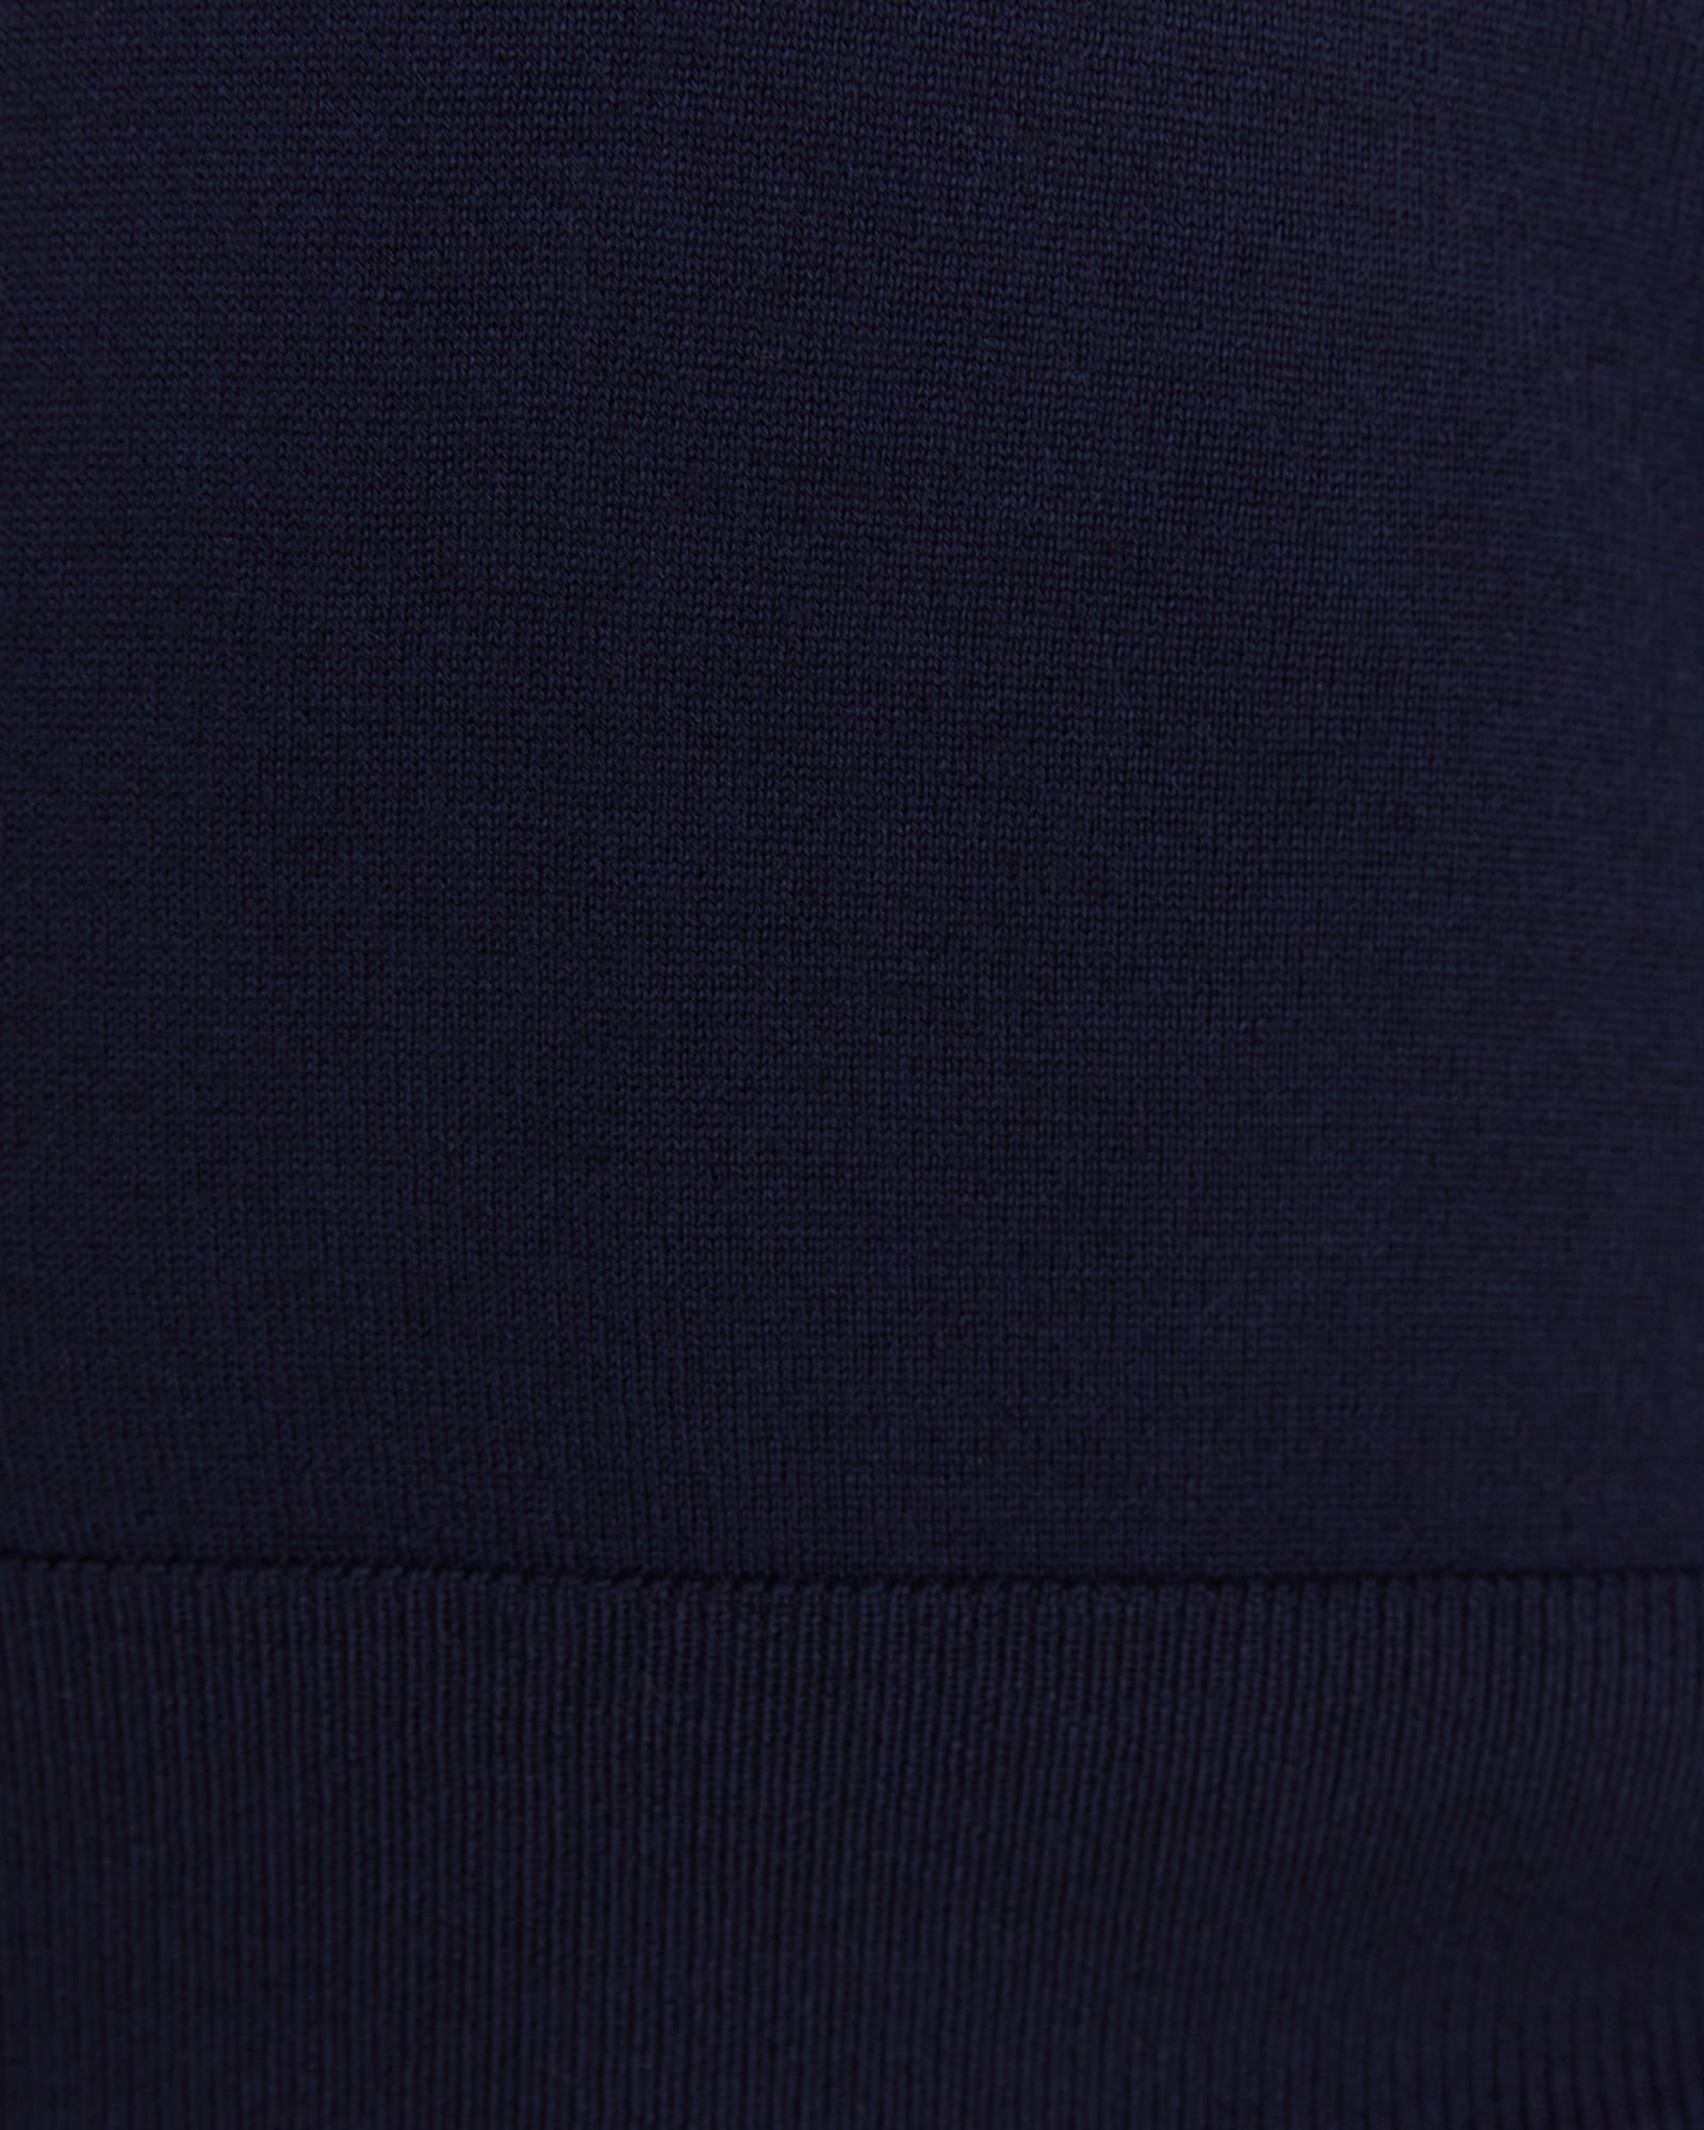 Merino Wool Long Sleeve Knit in NAVY